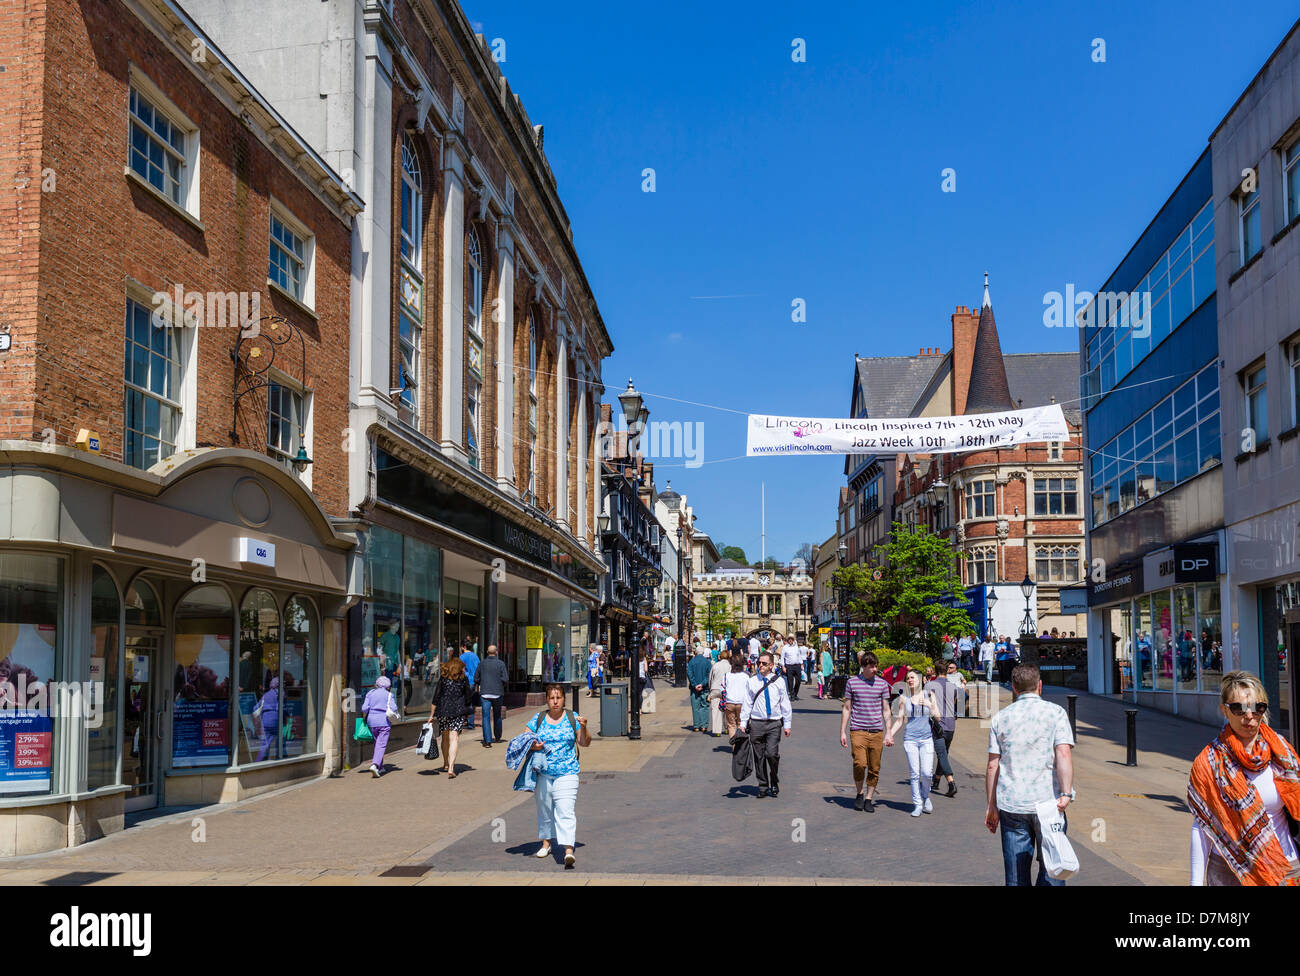 La rue principale dans le centre-ville, Lincoln, Lincolnshire, East Midlands, Angleterre, RU Banque D'Images